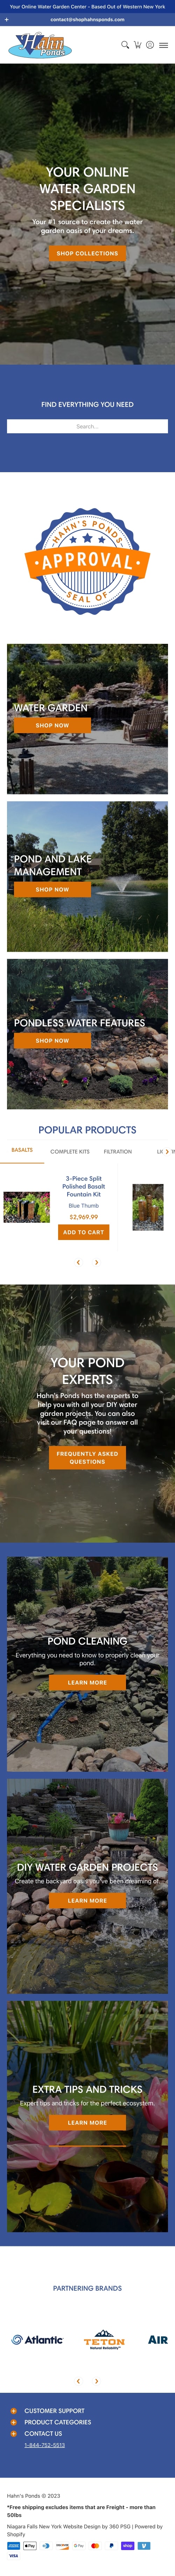 Hahn's Ponds Website - Mobile